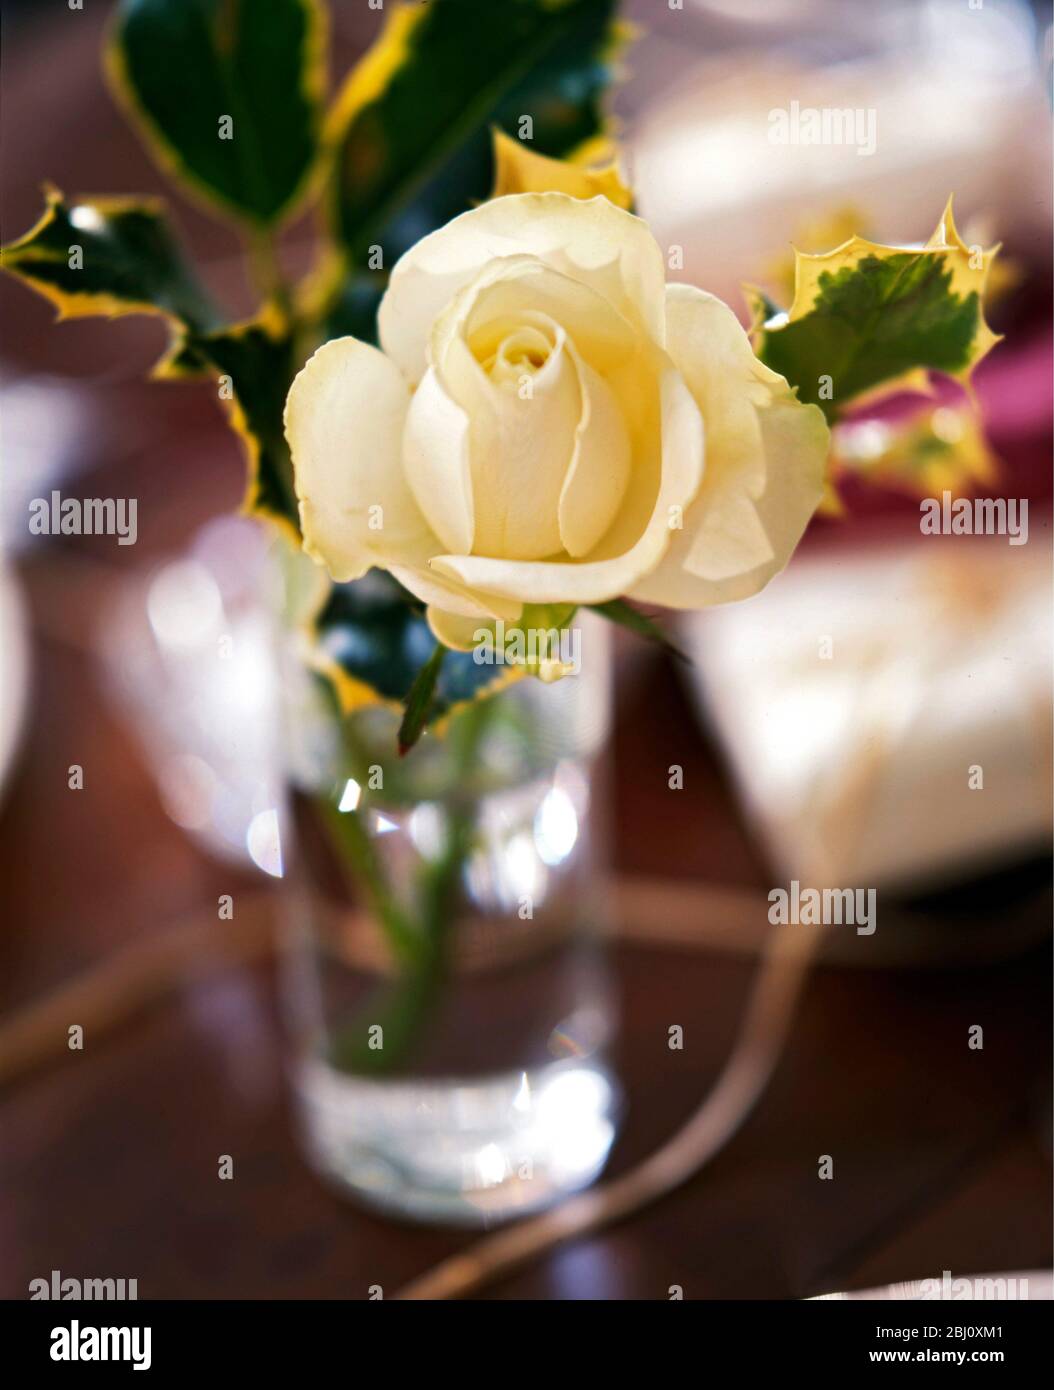 Rose bianche cremose con foglie agre variegate in piccolo vetro come decorazione della tavola di natale - Foto Stock